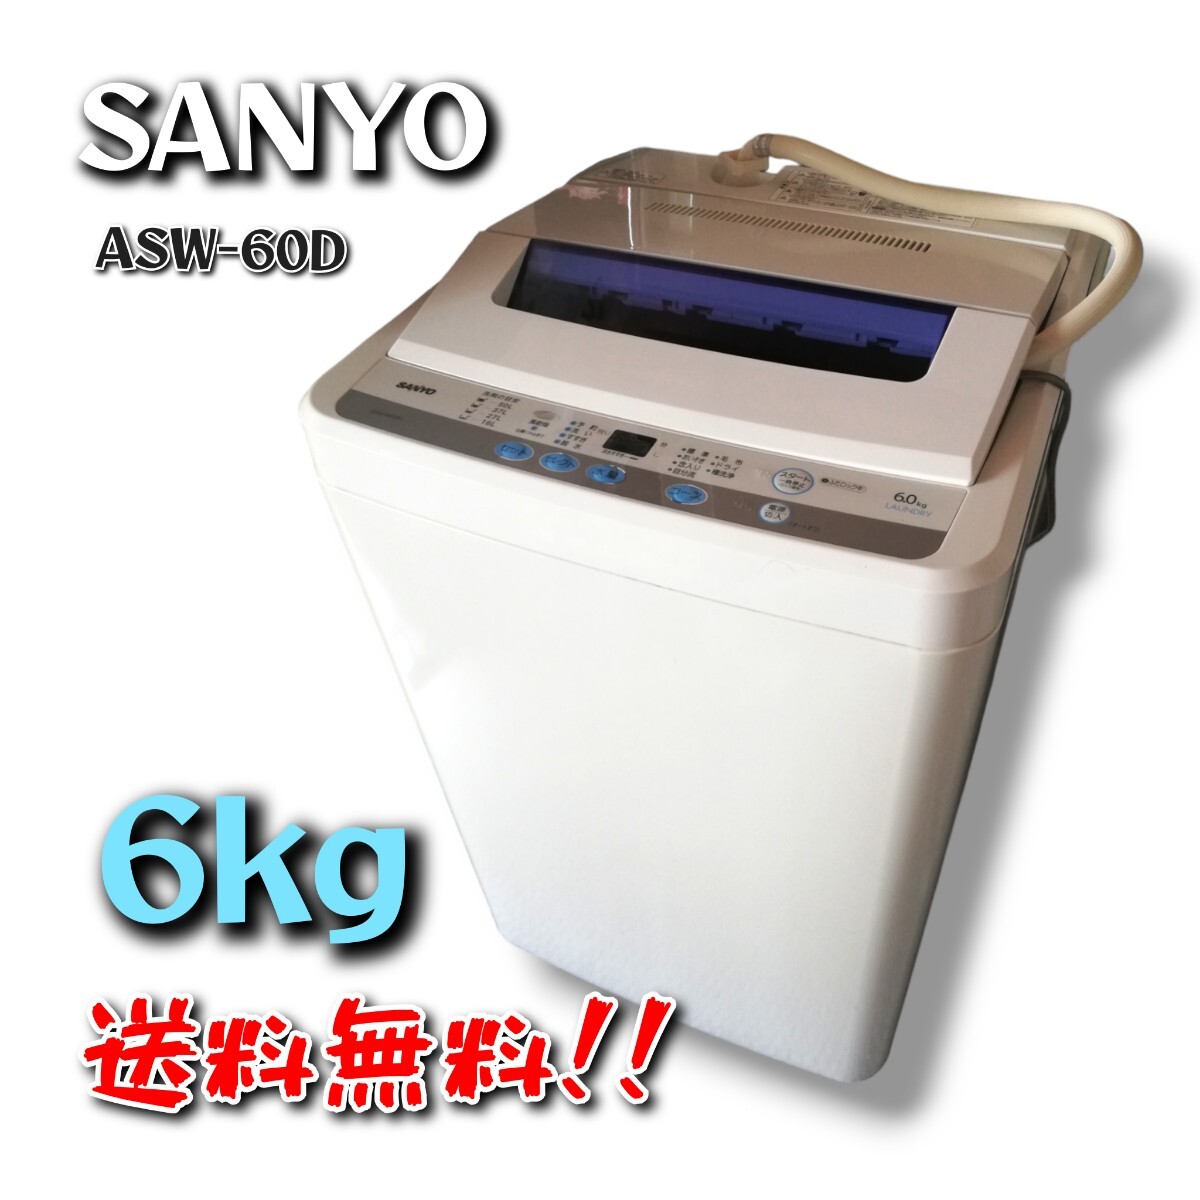 【送料無料】 SANYO 6kg 洗濯機 ASW-60D ■2010年製■ ホワイト 中古品 / 現状